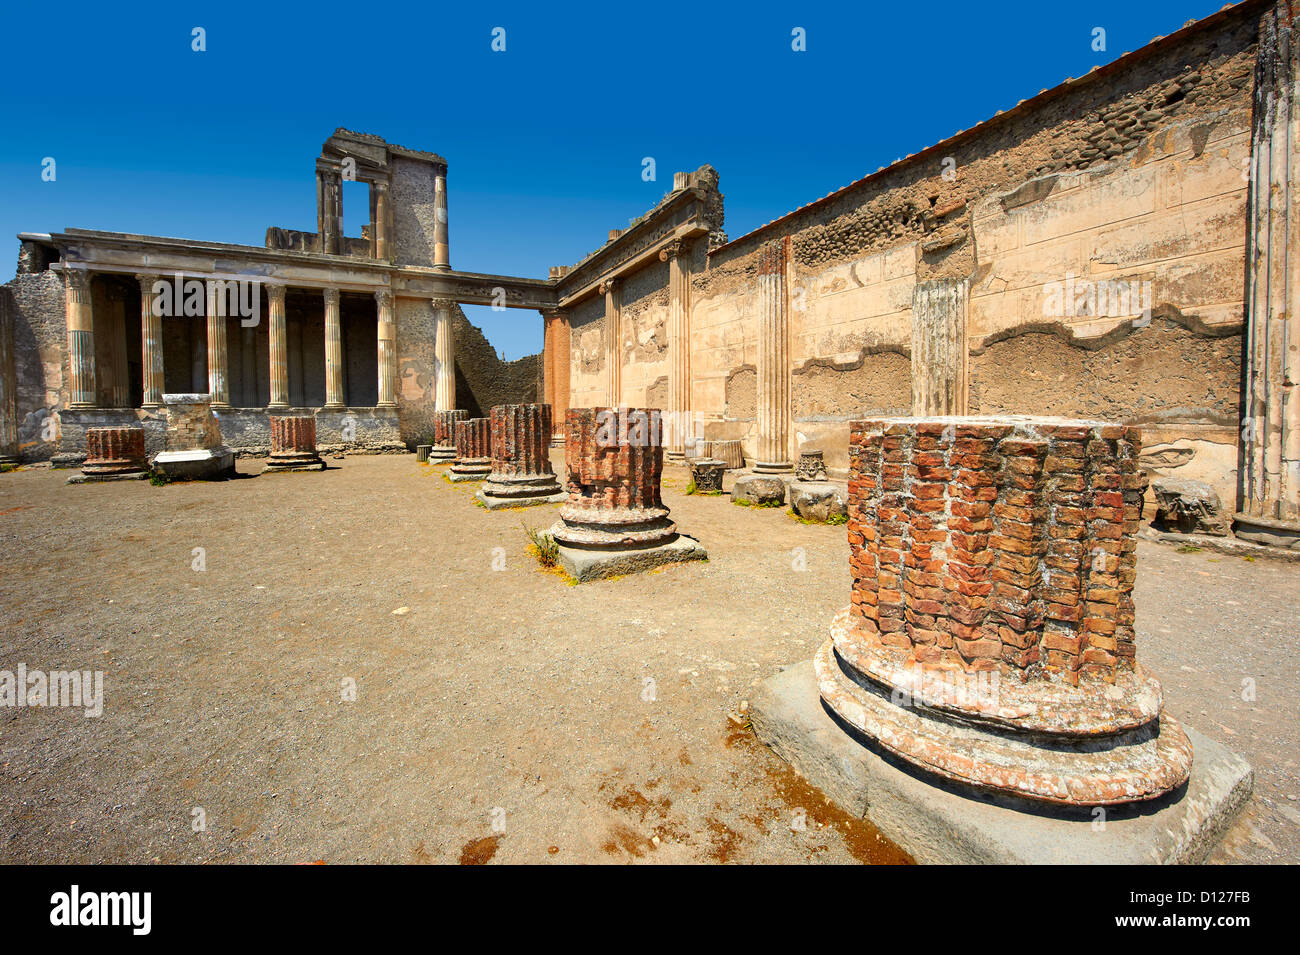 Les colonnes de la 2e 100. B.C basilique romaine de Pompéi , Italie Banque D'Images